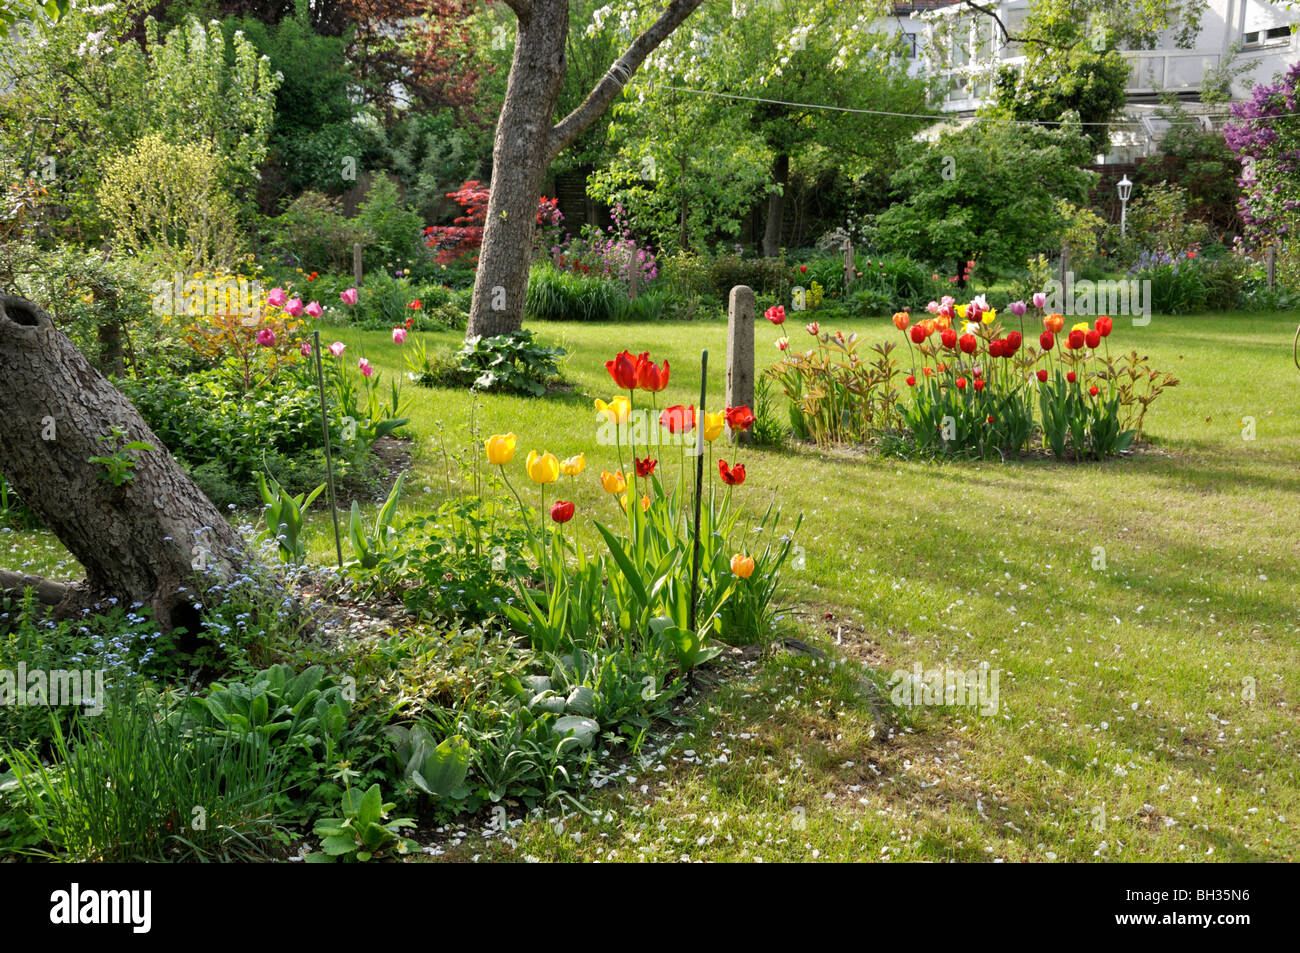 Fila casa jardín con césped y árboles frutales Foto de stock